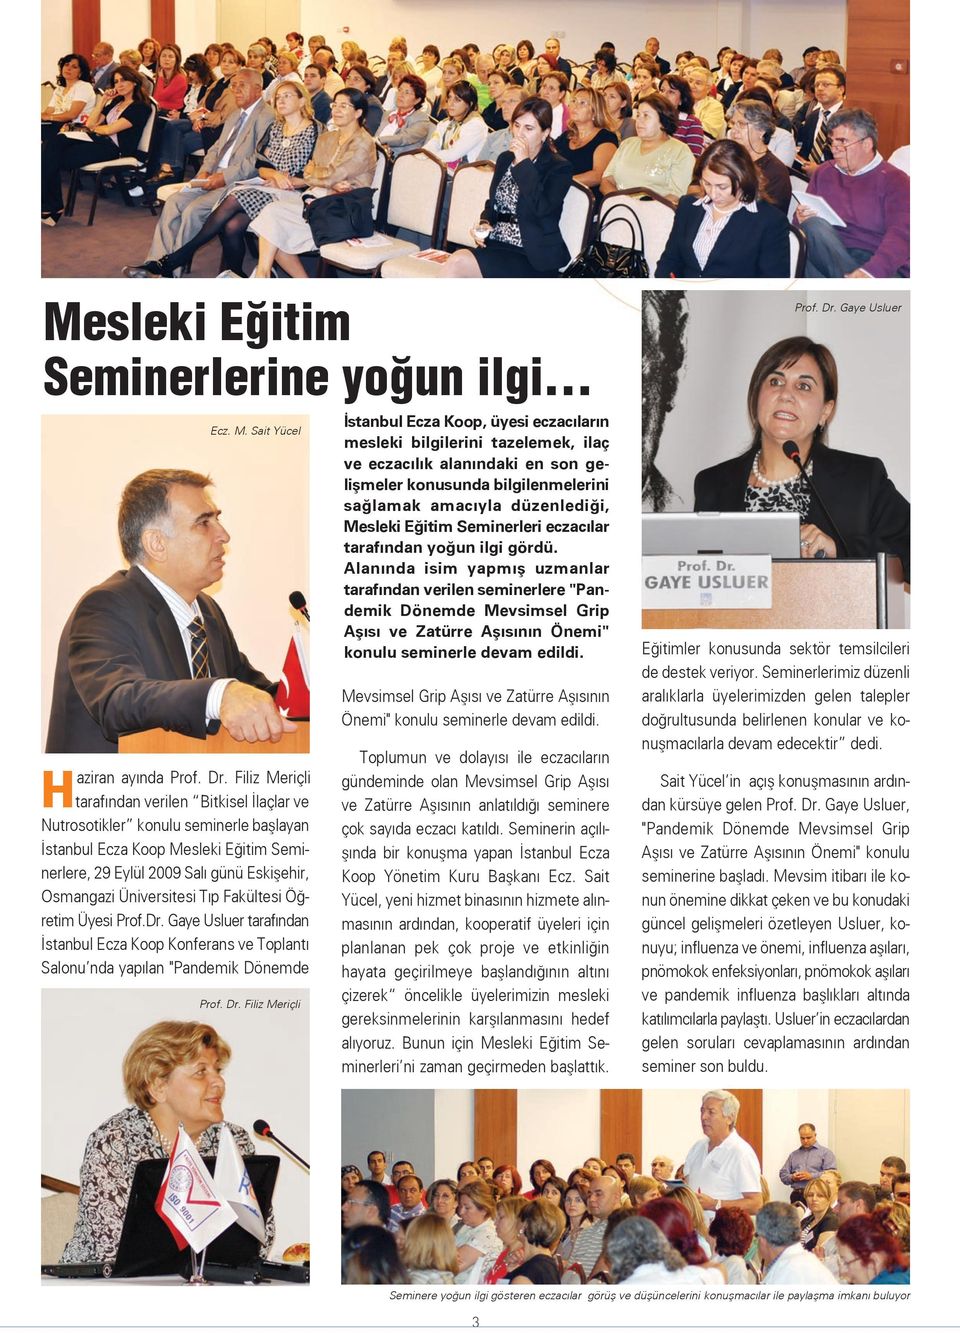 Tıp Fakültesi Öğretim Üyesi Prof.Dr. Gaye Usluer tarafından İstanbul Ecza Koop Konferans ve Toplantı Salonu nda yapılan "Pandemik Dönemde Prof. Dr.